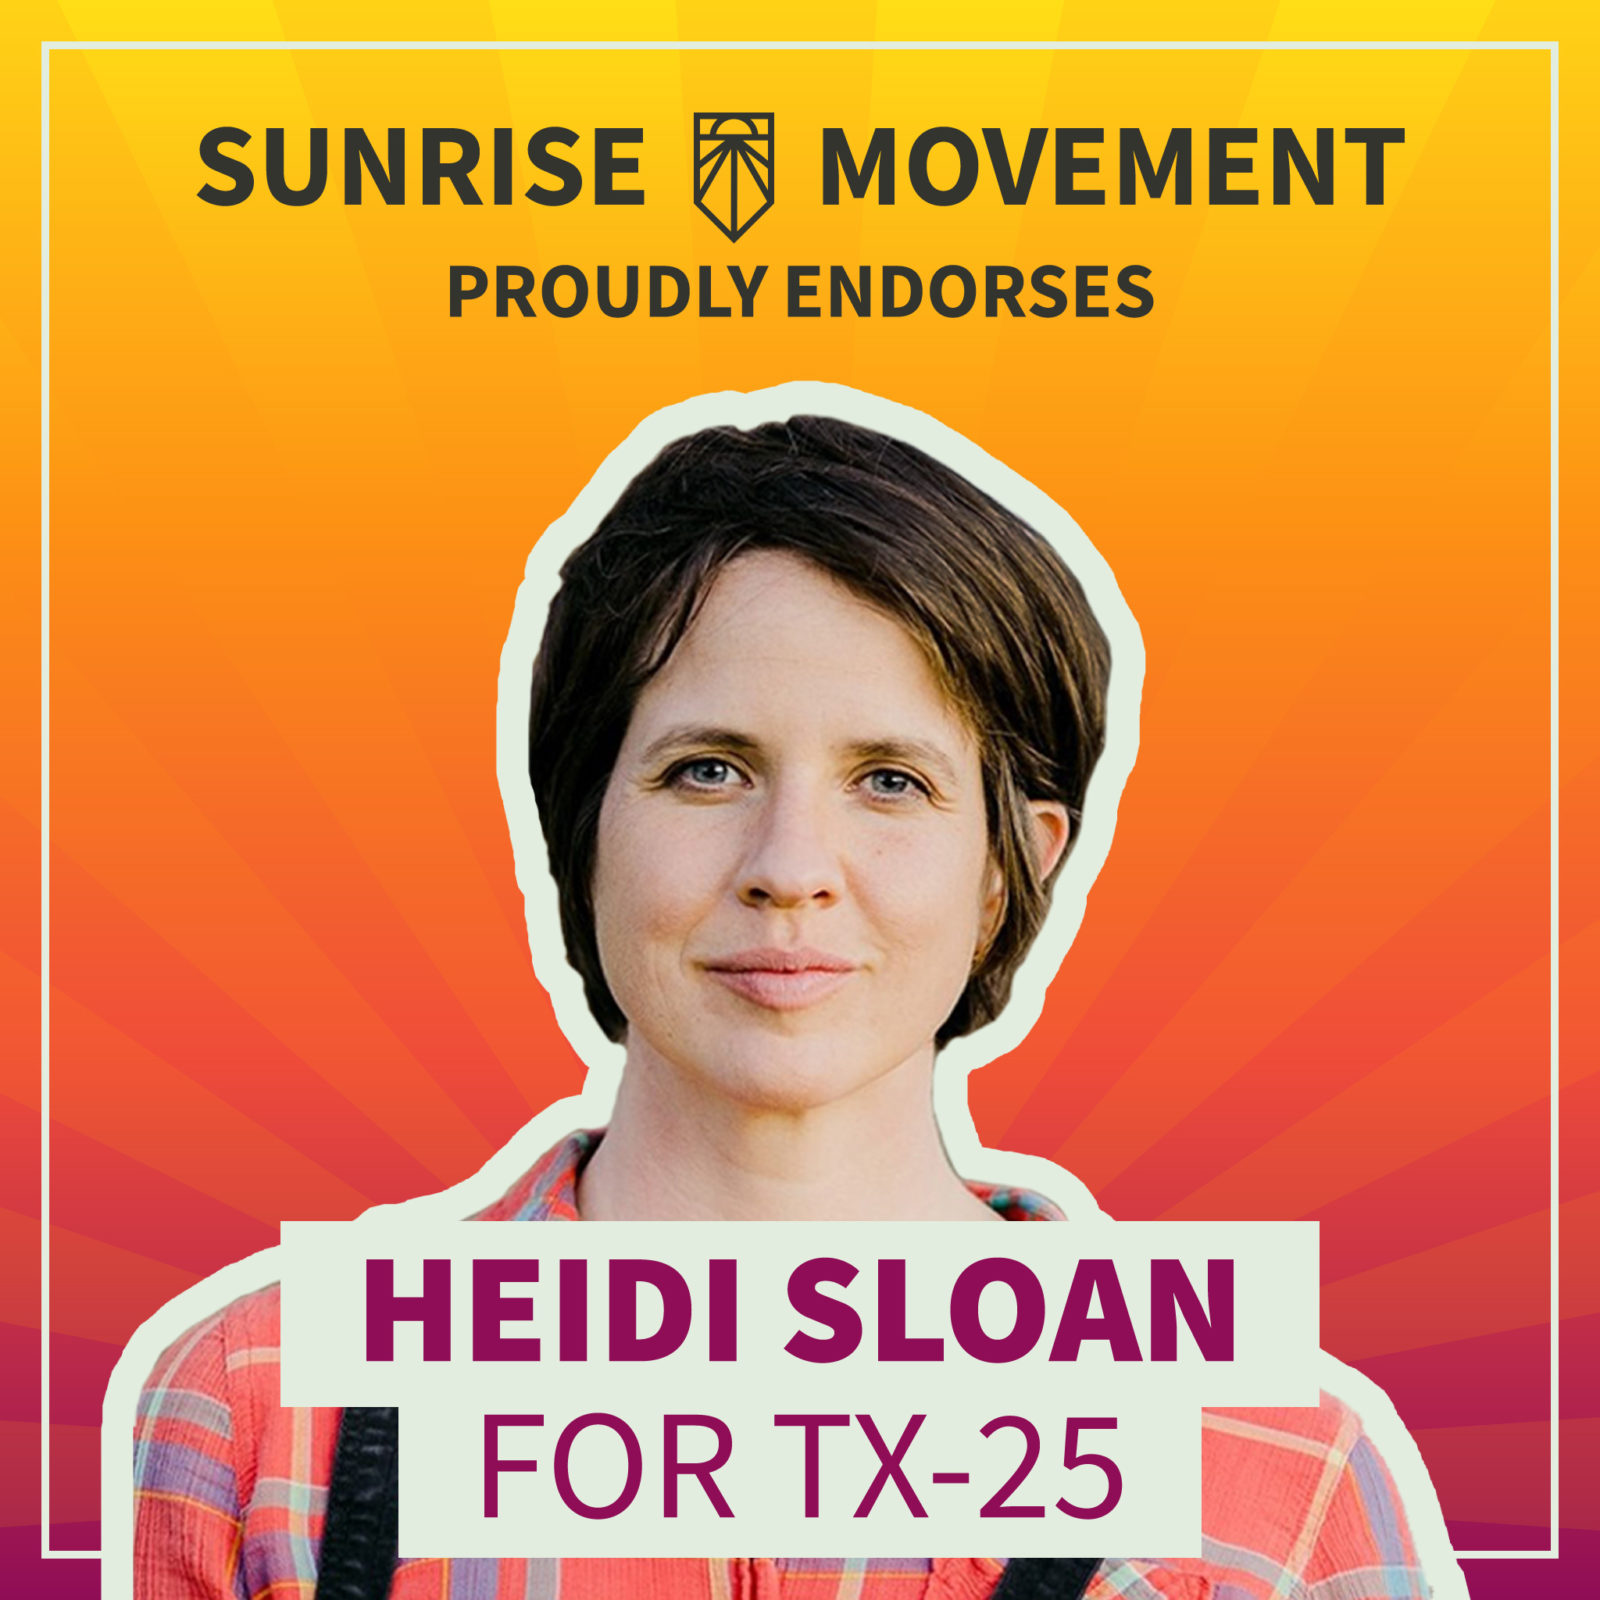 Una foto de Heidi Sloan con texto: Sunrise Movement respalda con orgullo a Heidi Sloan para TX-25